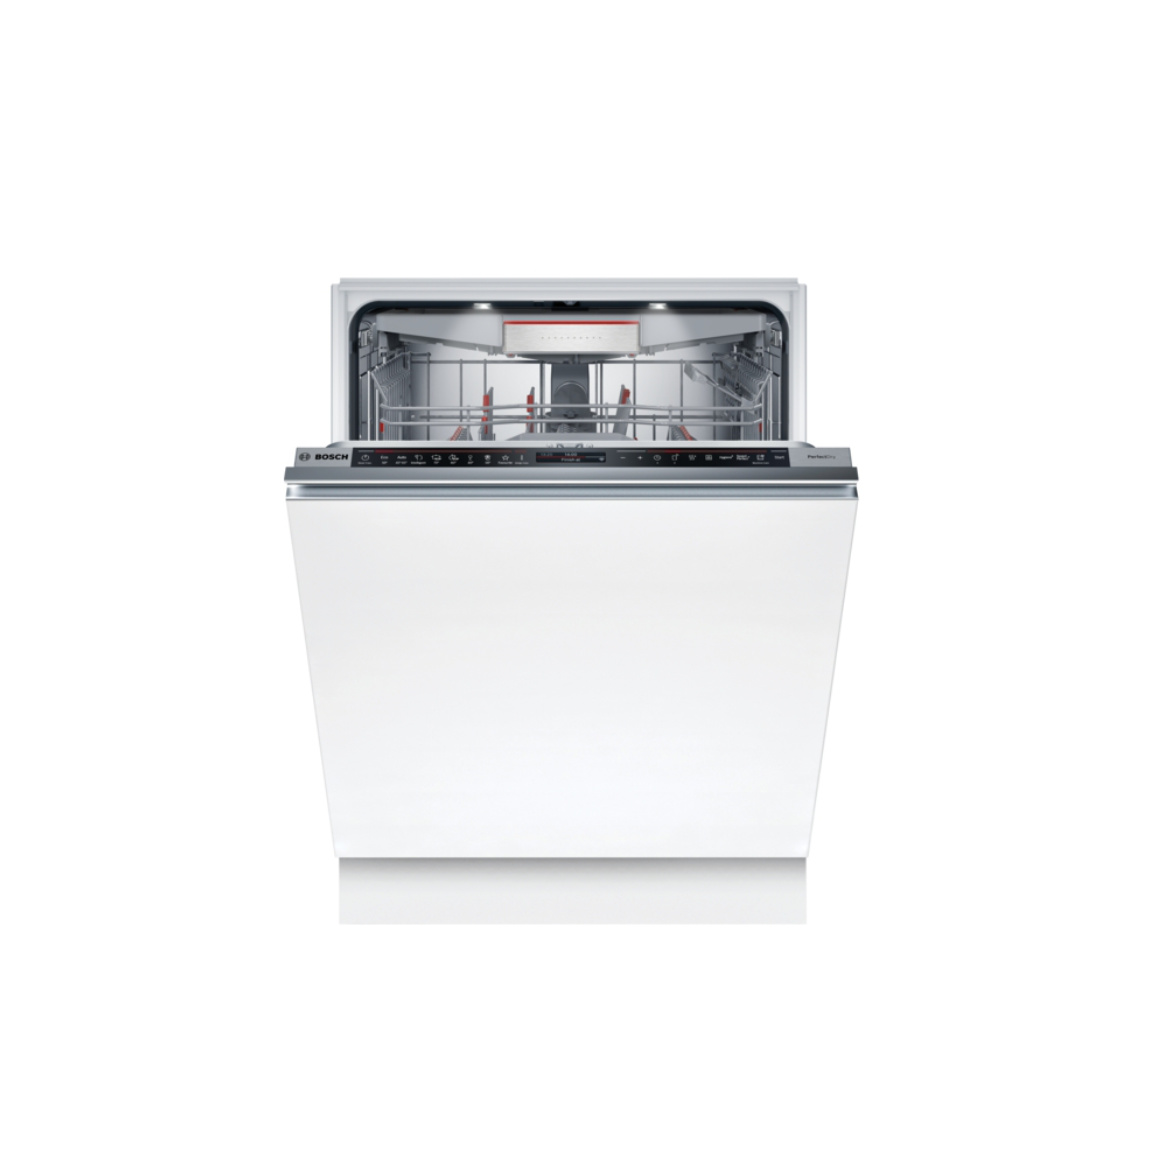 Bosch SMD8TCX01E Serie 8 vollintegrierter Geschirrspüler 60 cm – Weiß – Deal, Schnäppchen, sparen